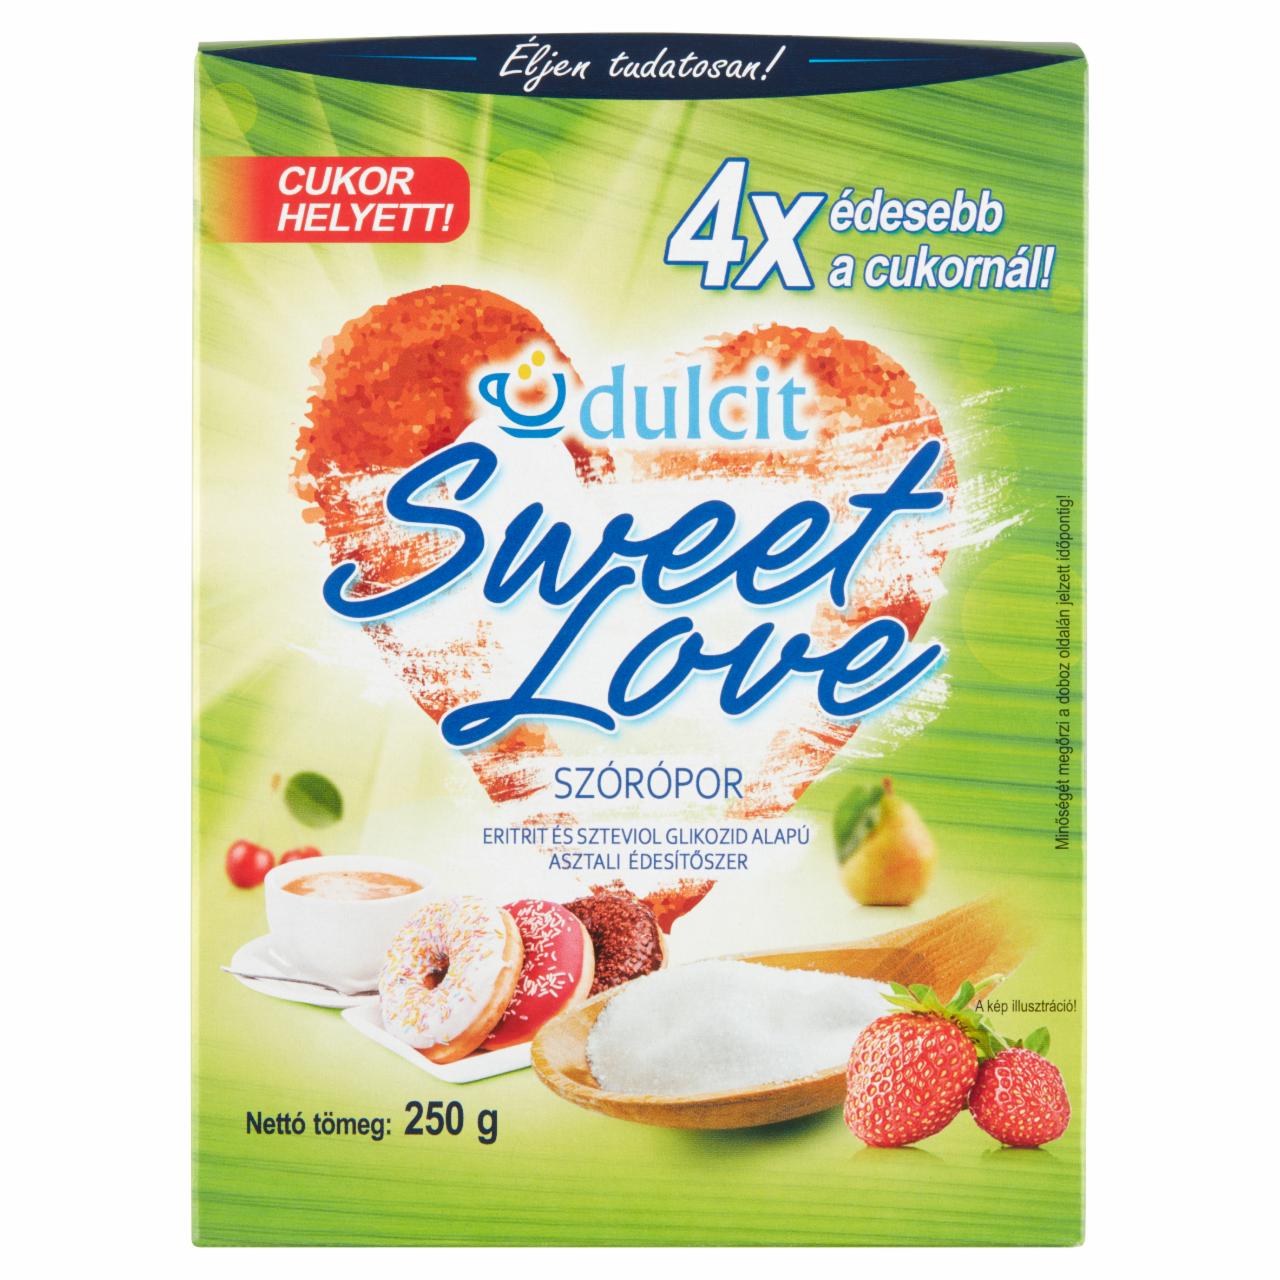 Képek - Dulcit Sweet Love eritrit és szteviol glikozid alapú asztali édesítőszer szórópor 250 g